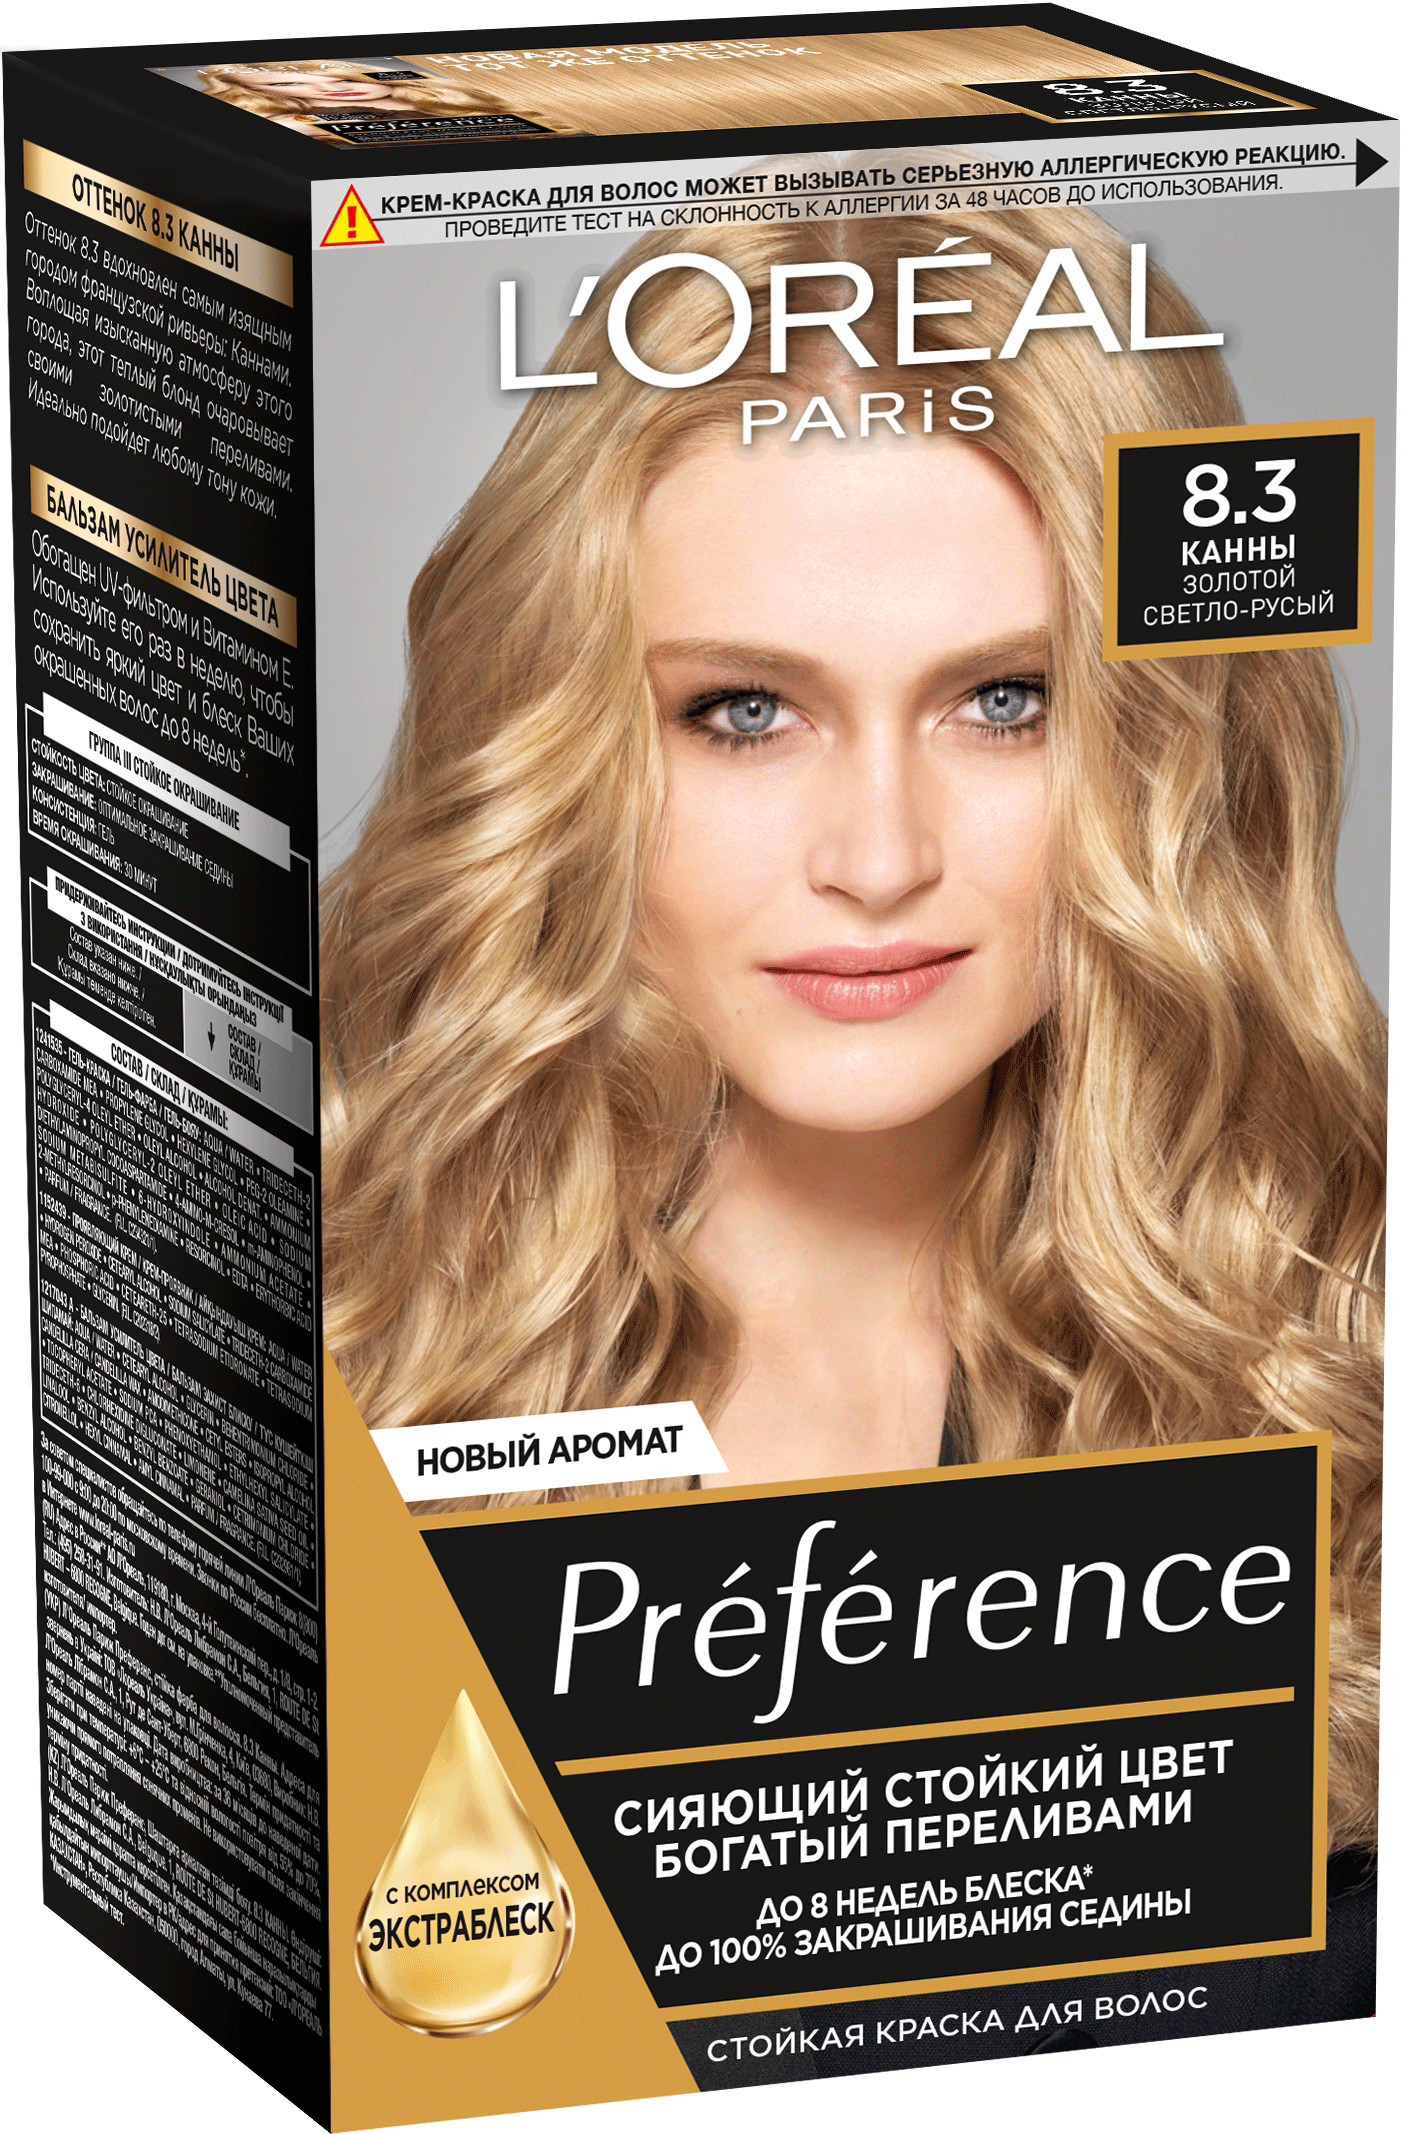 Краска для волос L'Oreal Paris Preference Канны, золотой светло-русый, №8.3, 175 мл loreal paris preference краска для волос оттенок 1 0 неаполь 174 мл